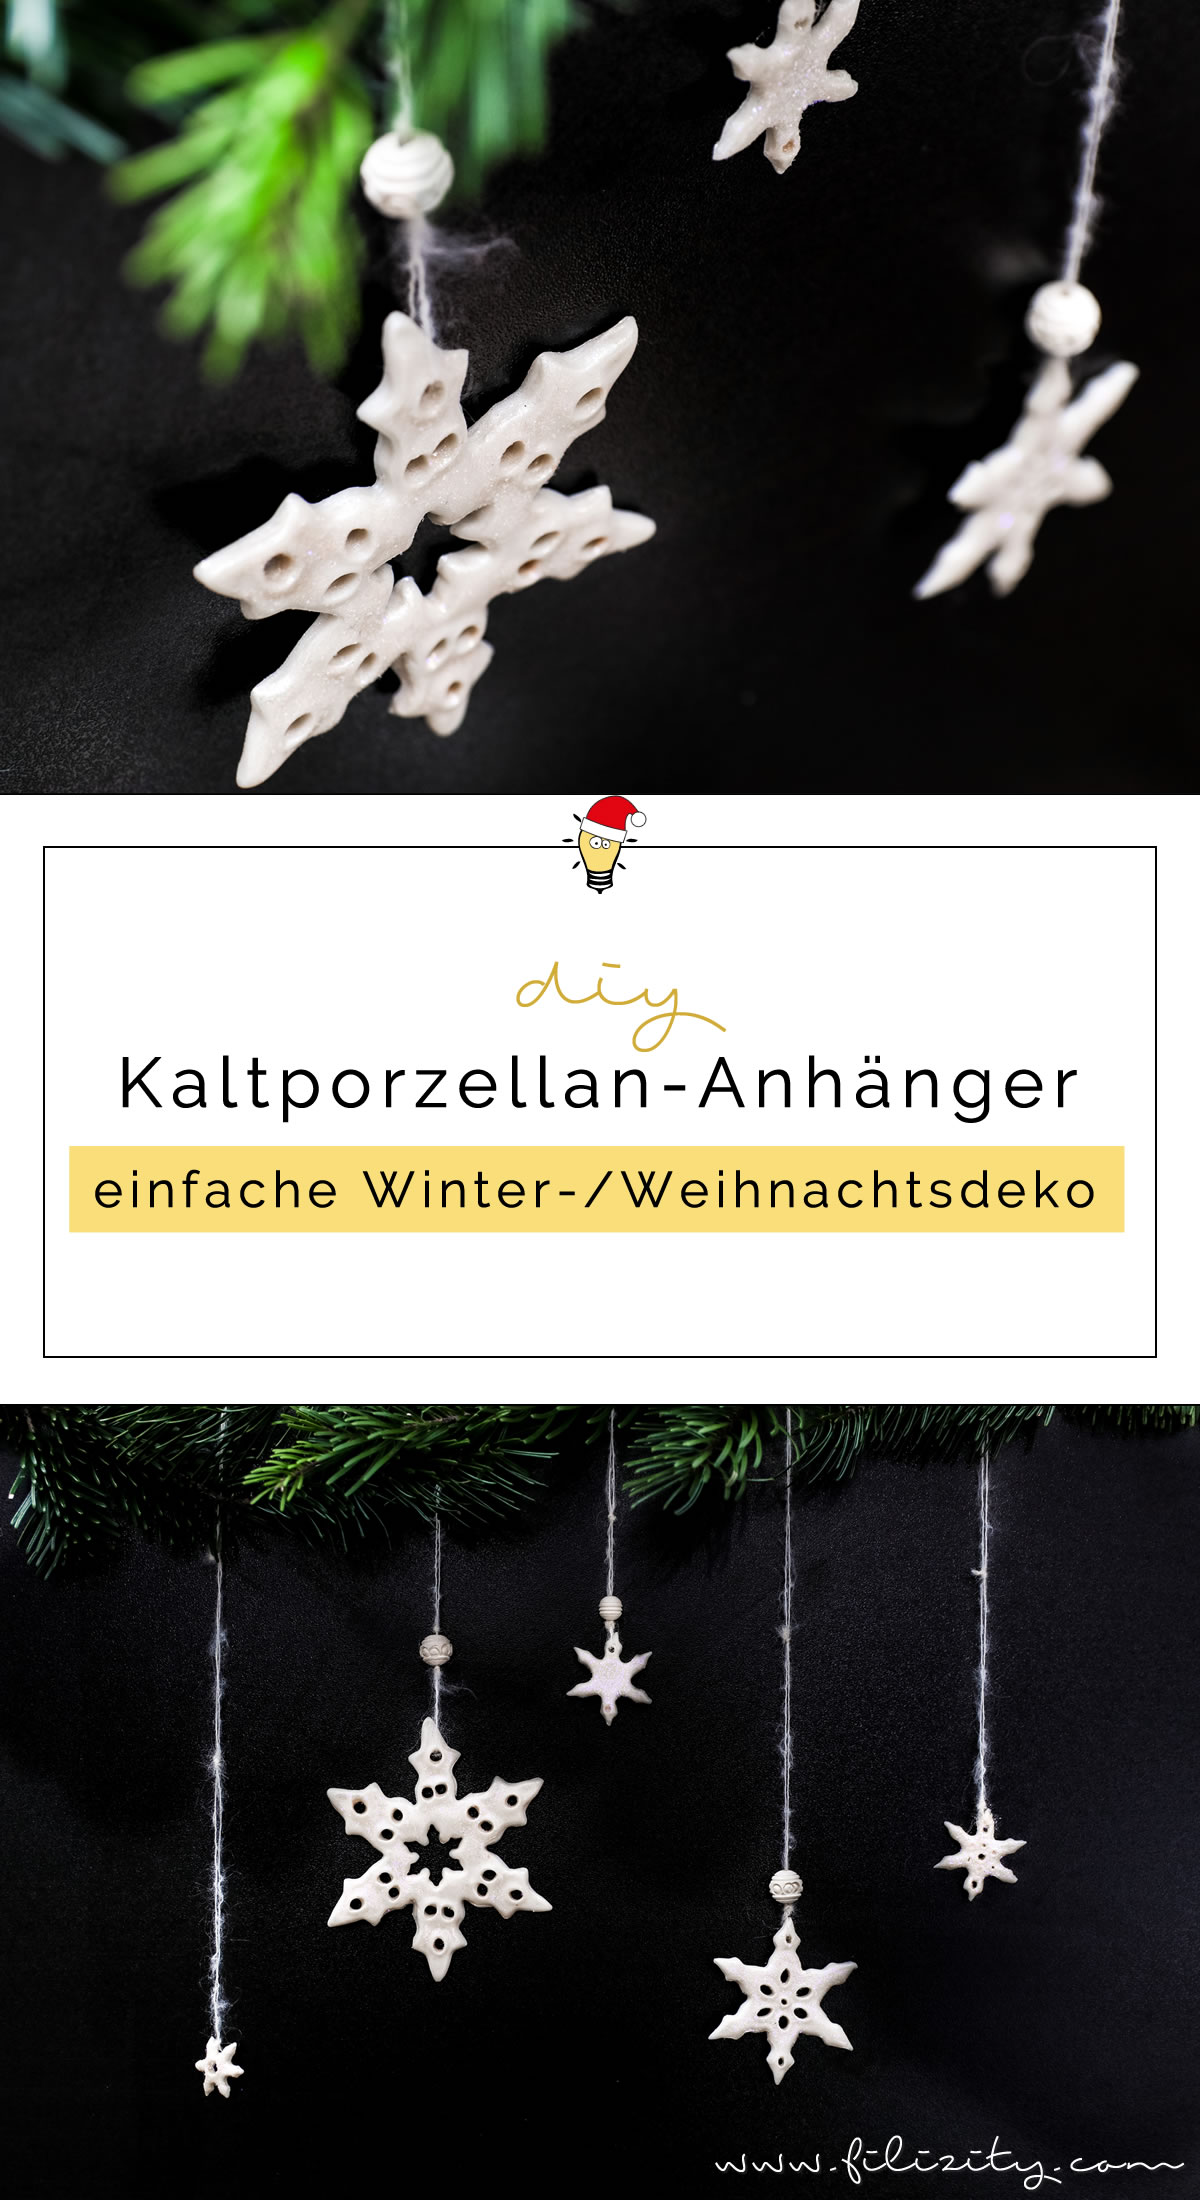 DIY Winter & Weihnachtsdeko: Kaltporzellan Schneeflocken Fenster-/Baum-Anhänger selber machen | Filizity.com | DIY-Blog aus dem Rheinland #weihnachtsdeko #kaltporzellan #schneeflöckchen